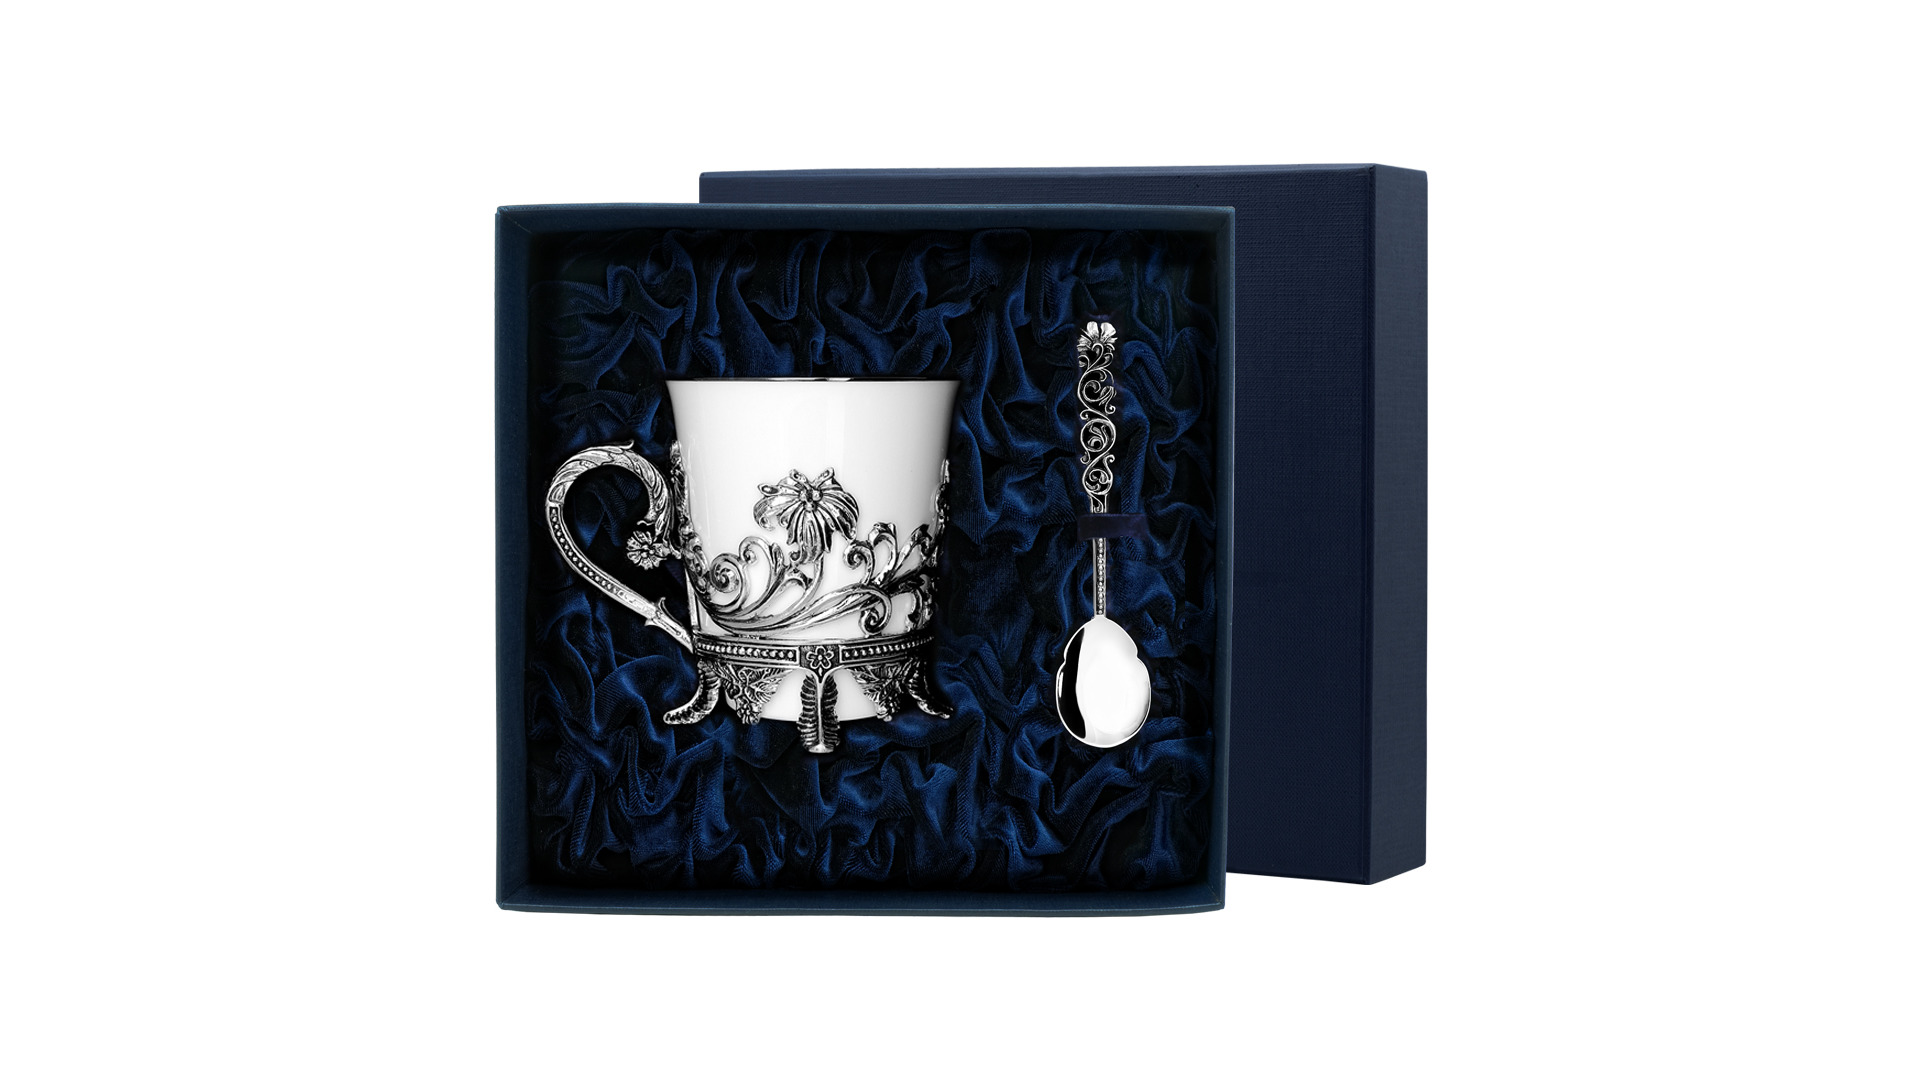 Чашка чайная с ложкой в футляре АргентА серебро 925 и Фарфор Цветочная 134,5 г, серебро 925